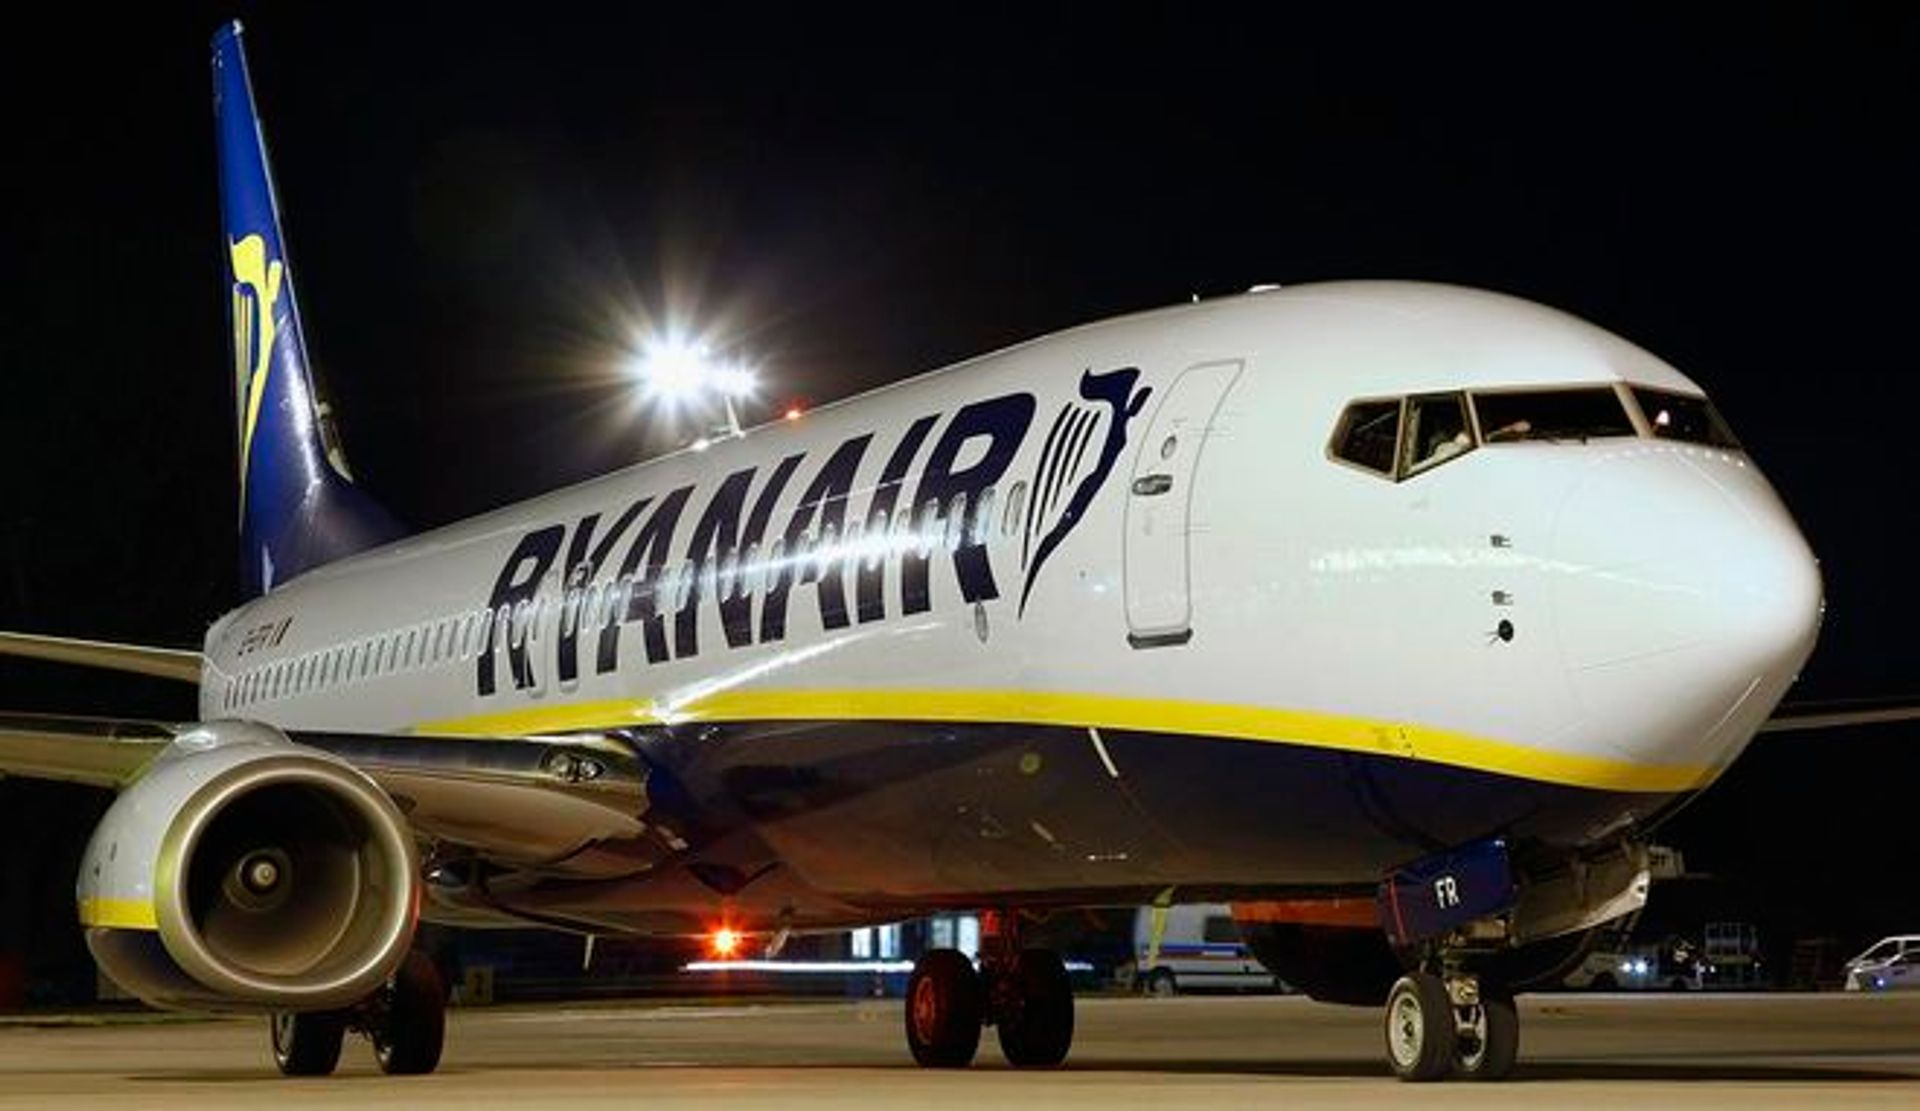  Pierwsze samoloty Ryanair już wystartowały z bazy we Wrocławiu